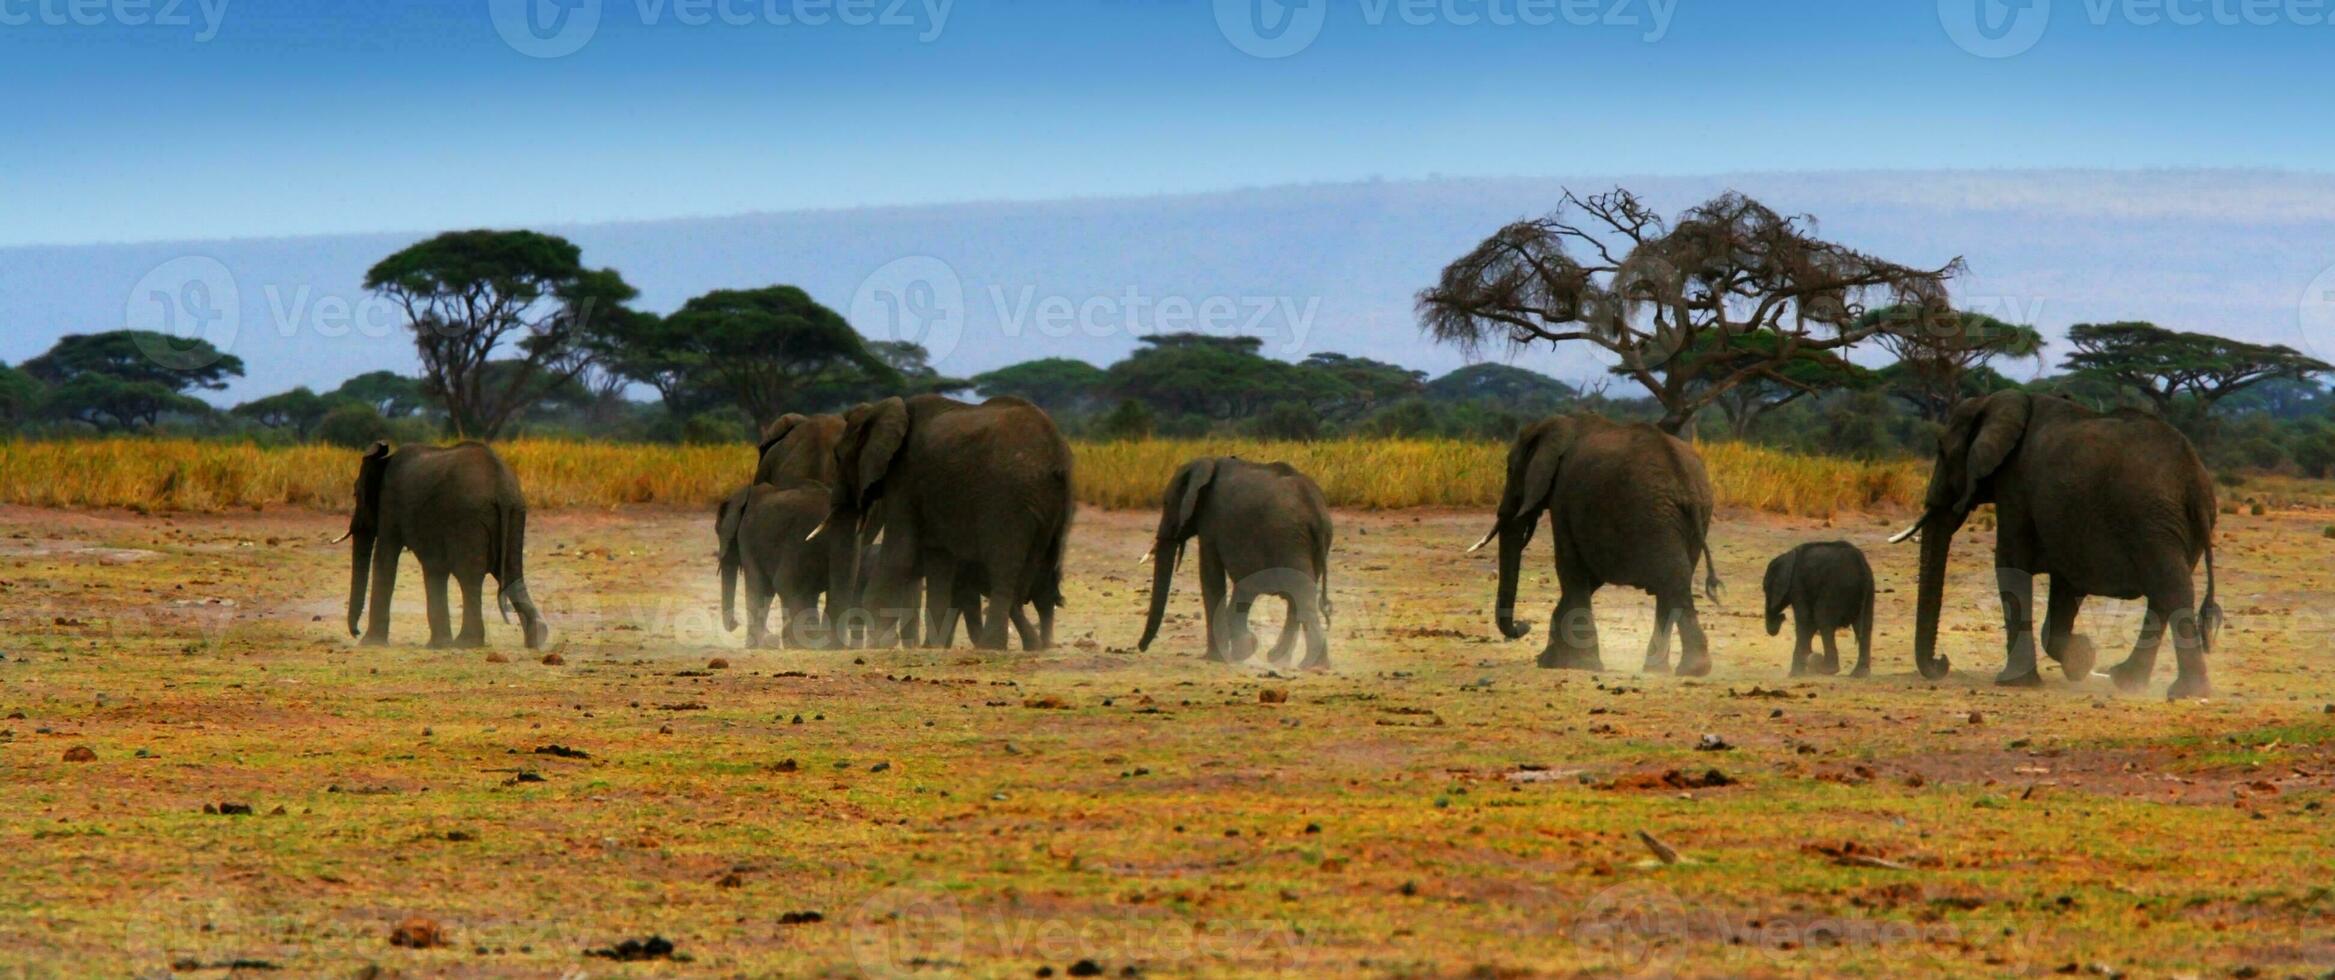 Afrikaanse wild olifanten foto